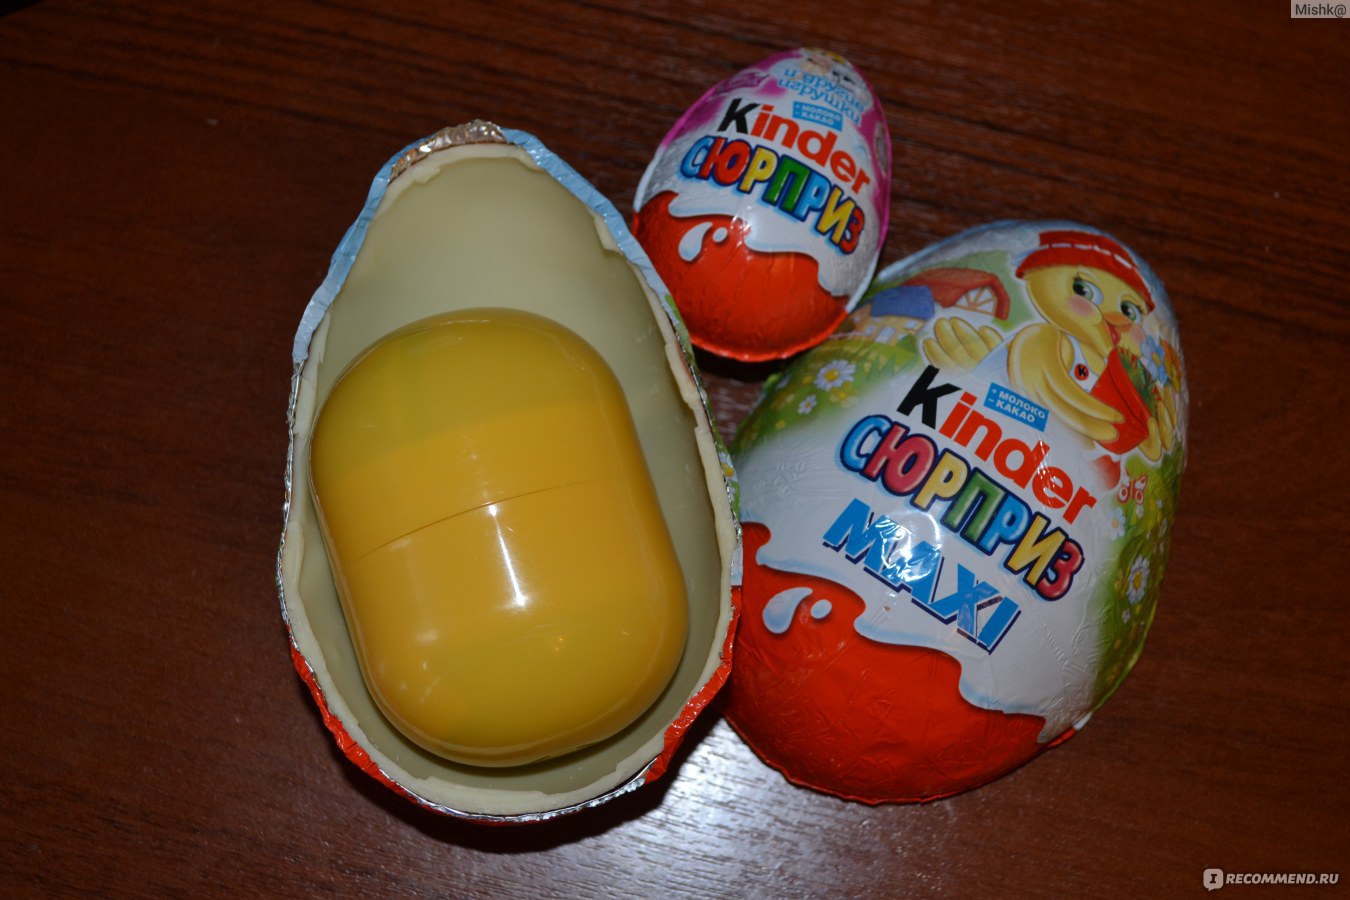 Открывать яйца сюрпризы. Киндер сюрприз макси игрушки. Киндер сюрприз макси в ленте. Яйцо Киндер сюрприз. Киндер сюрприз яйцо внутри.